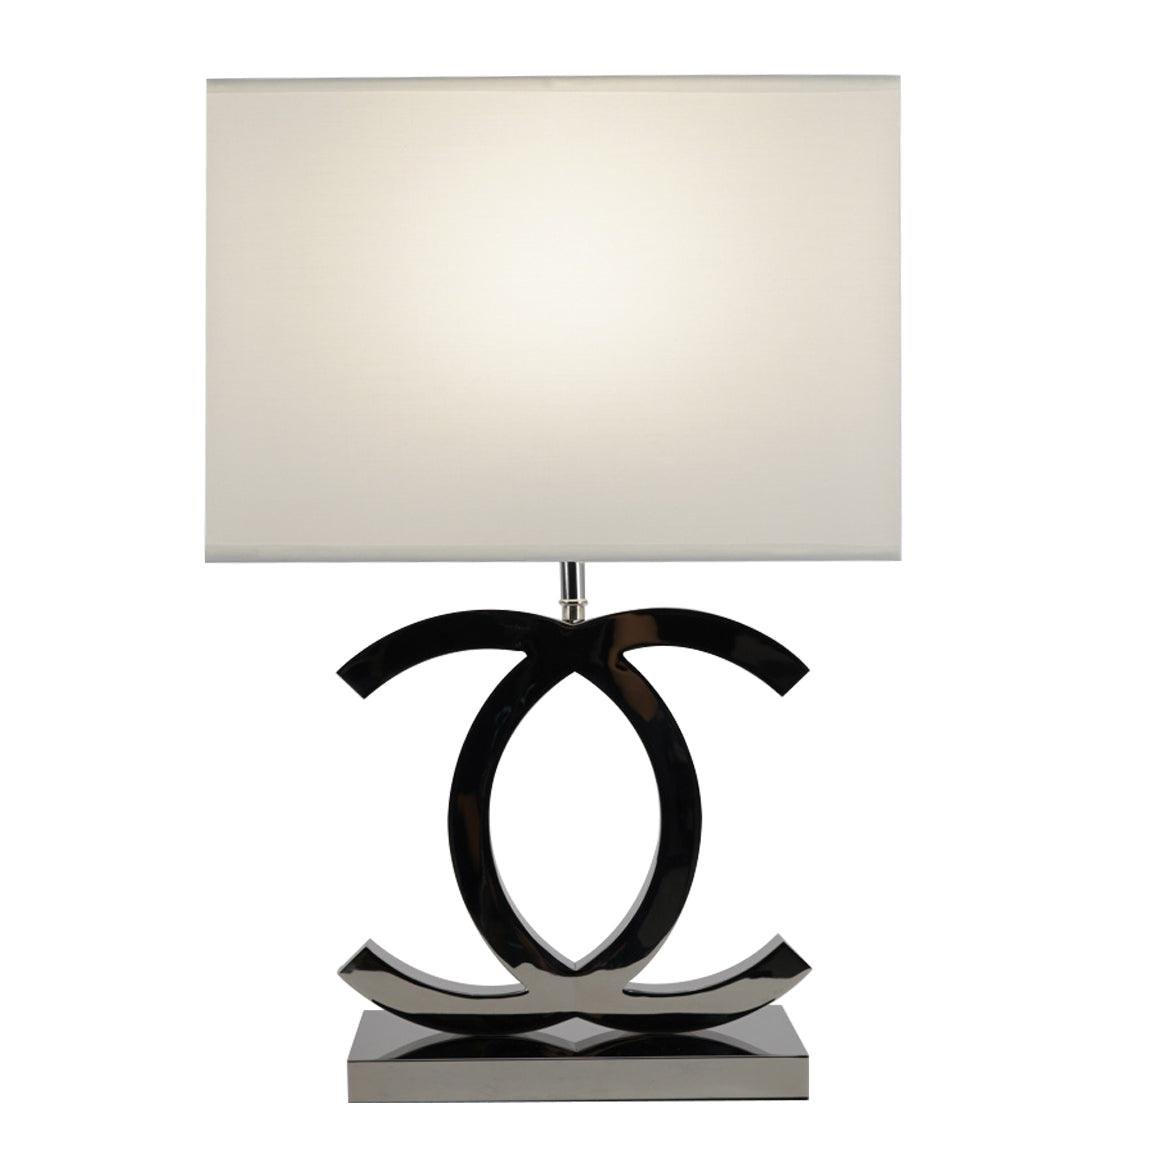 Stainless Steel Table Lamp Φ 14.3″ x H 24.4″ , Dia 36.5cm x H 62cm , Chrome+White , EU plug